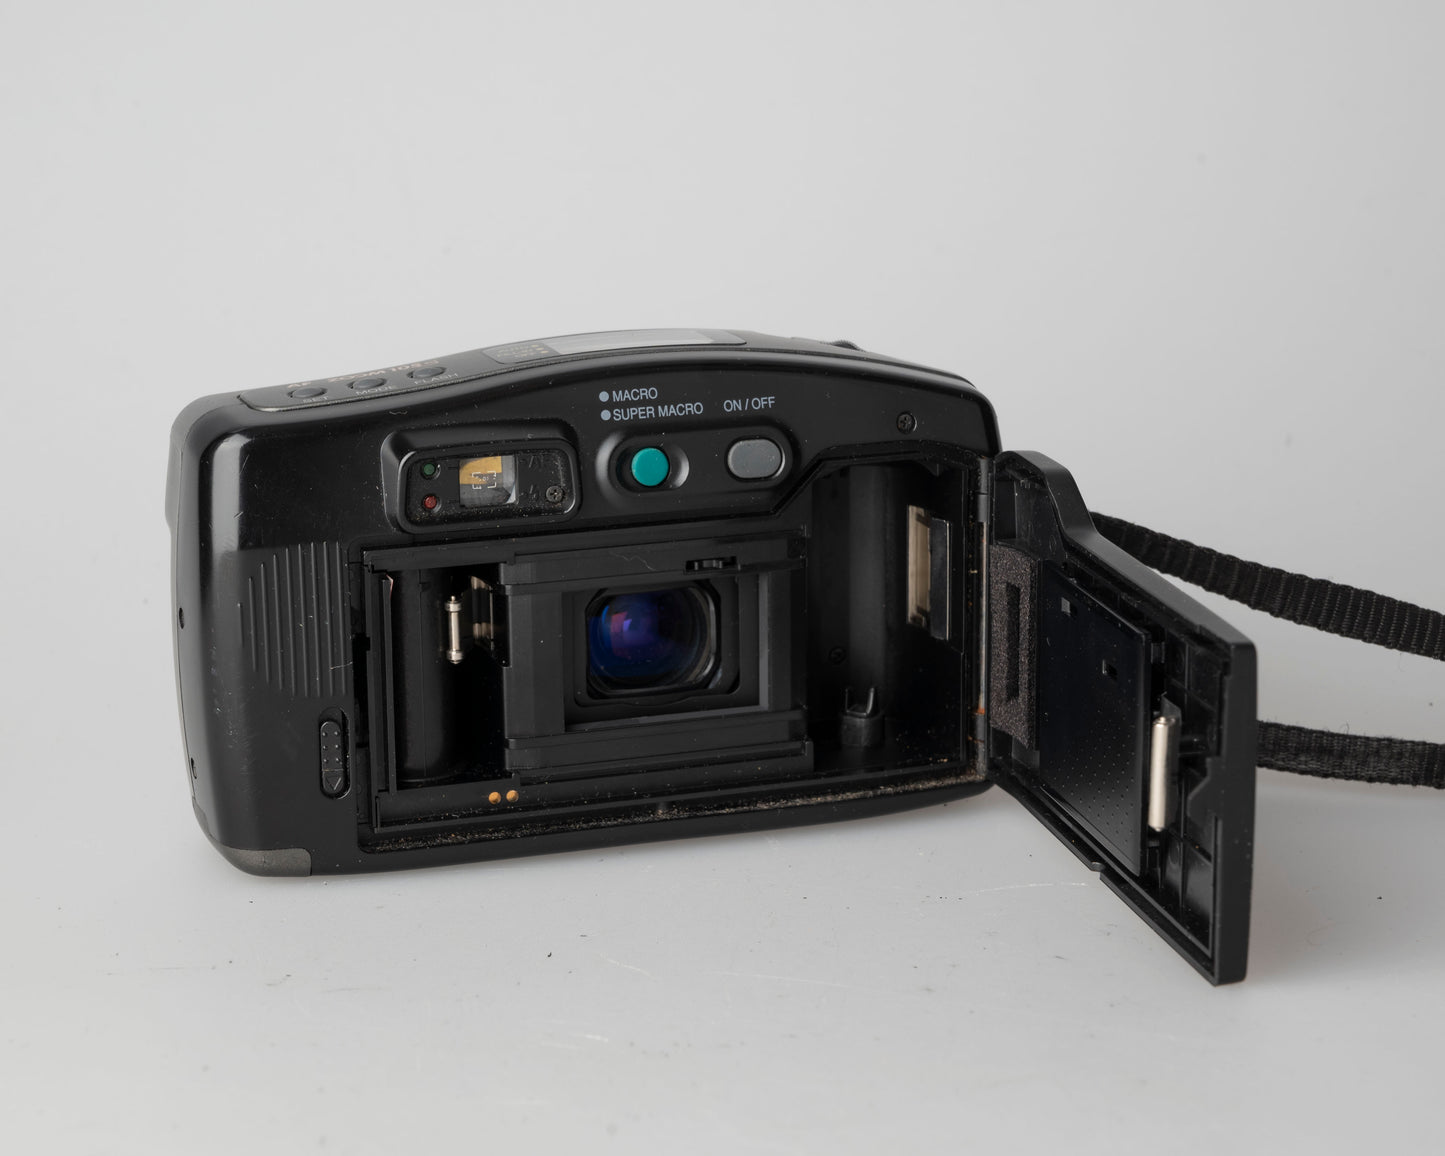 Samsung AF Zoom 105S 35mm camera w/ case (serial 97403048)